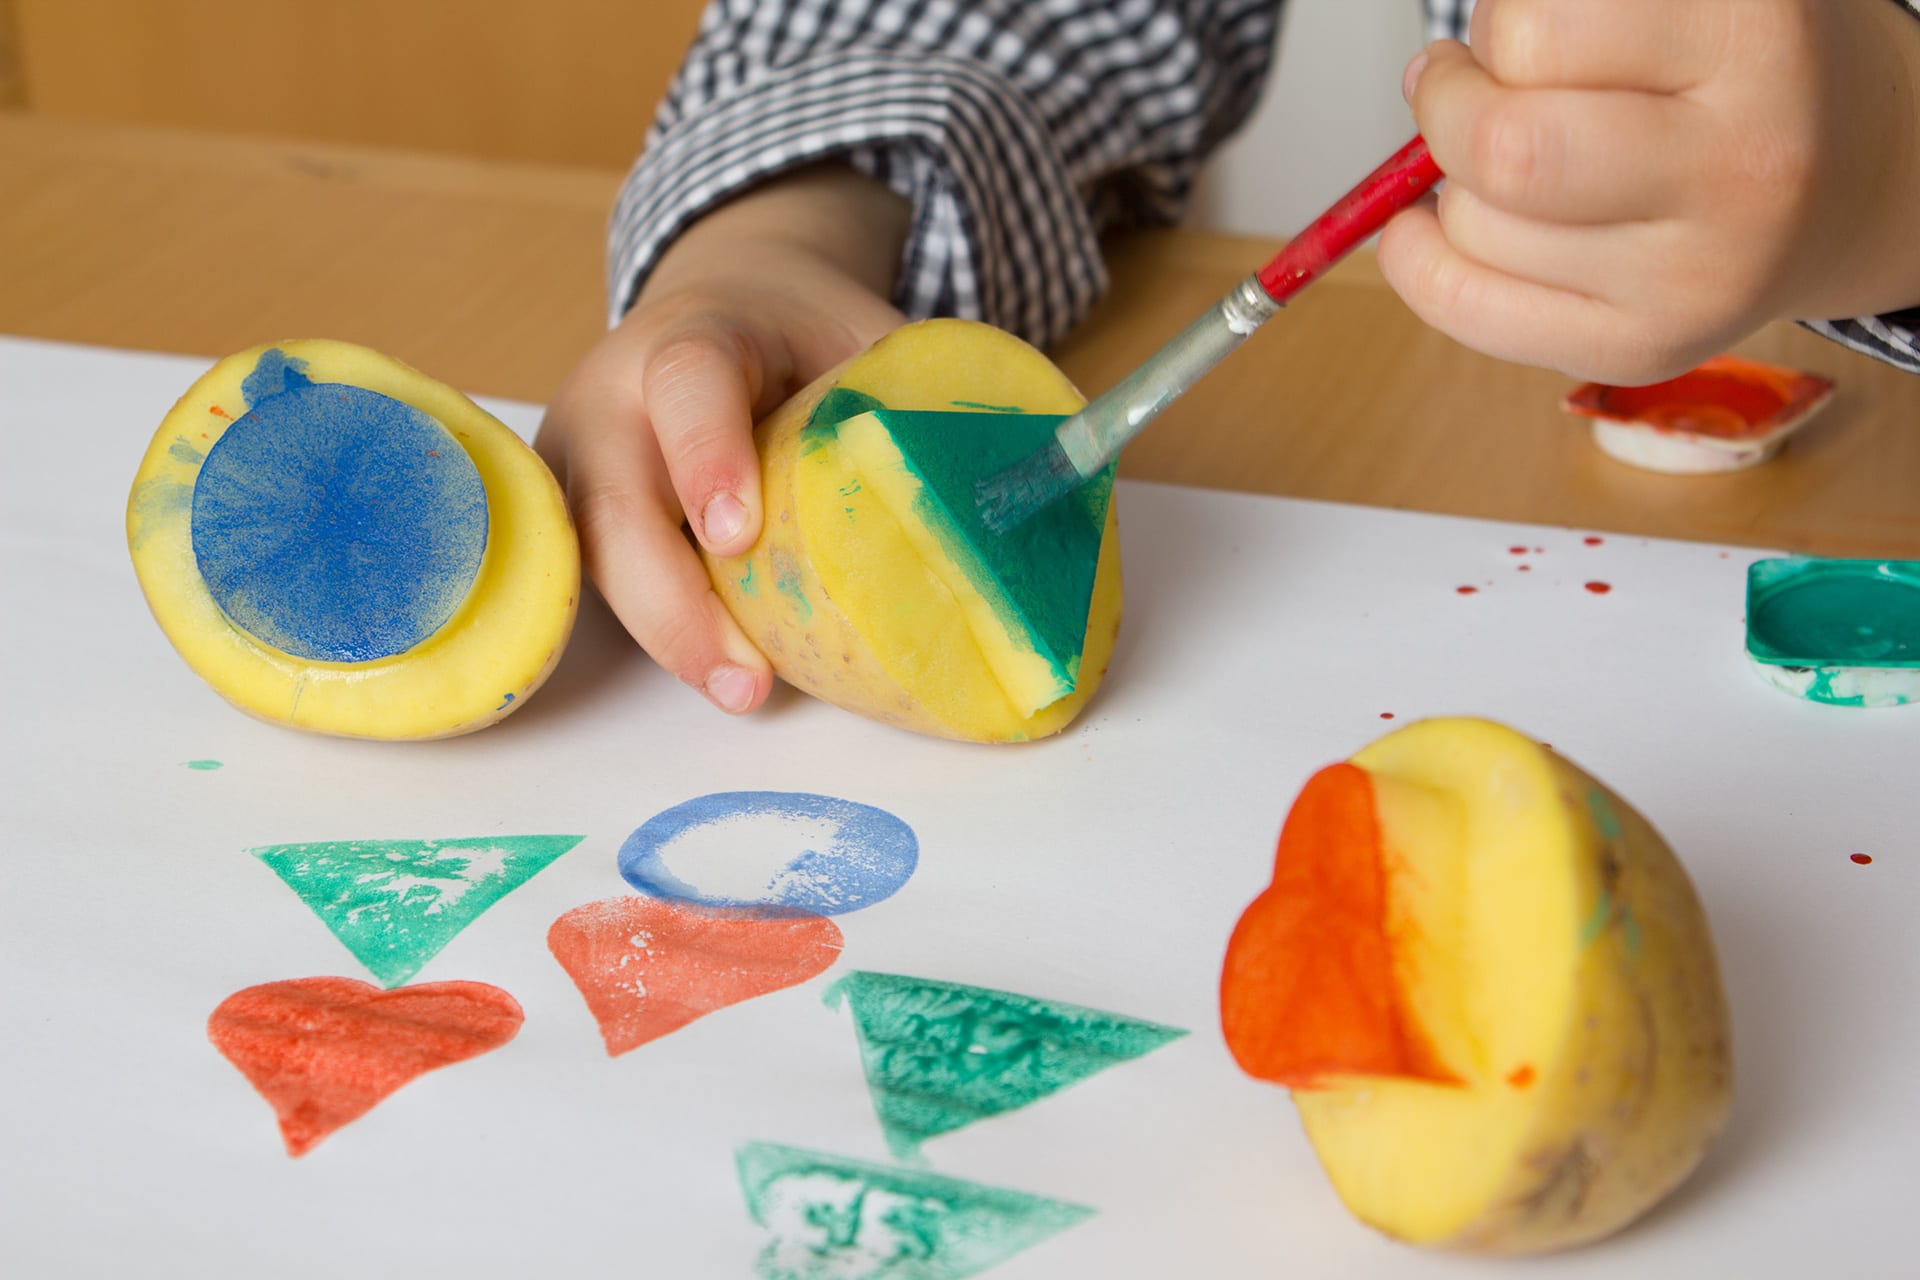  Erstes Basteln für Kinder | Kind malt Kartoffel grün an